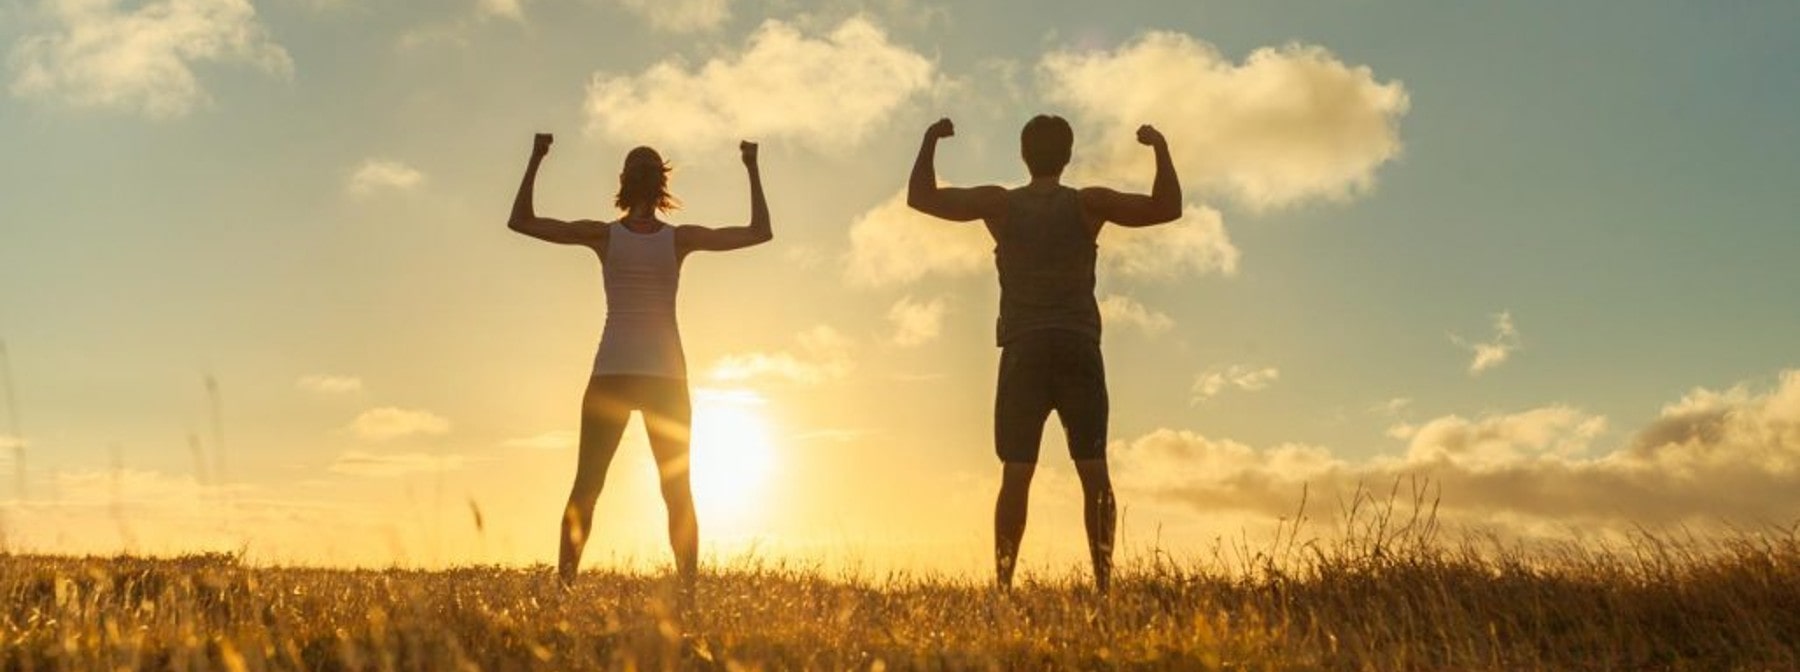 Hvordan gavner motion din mentale sundhed, og hvilke øvelser er bedst? 